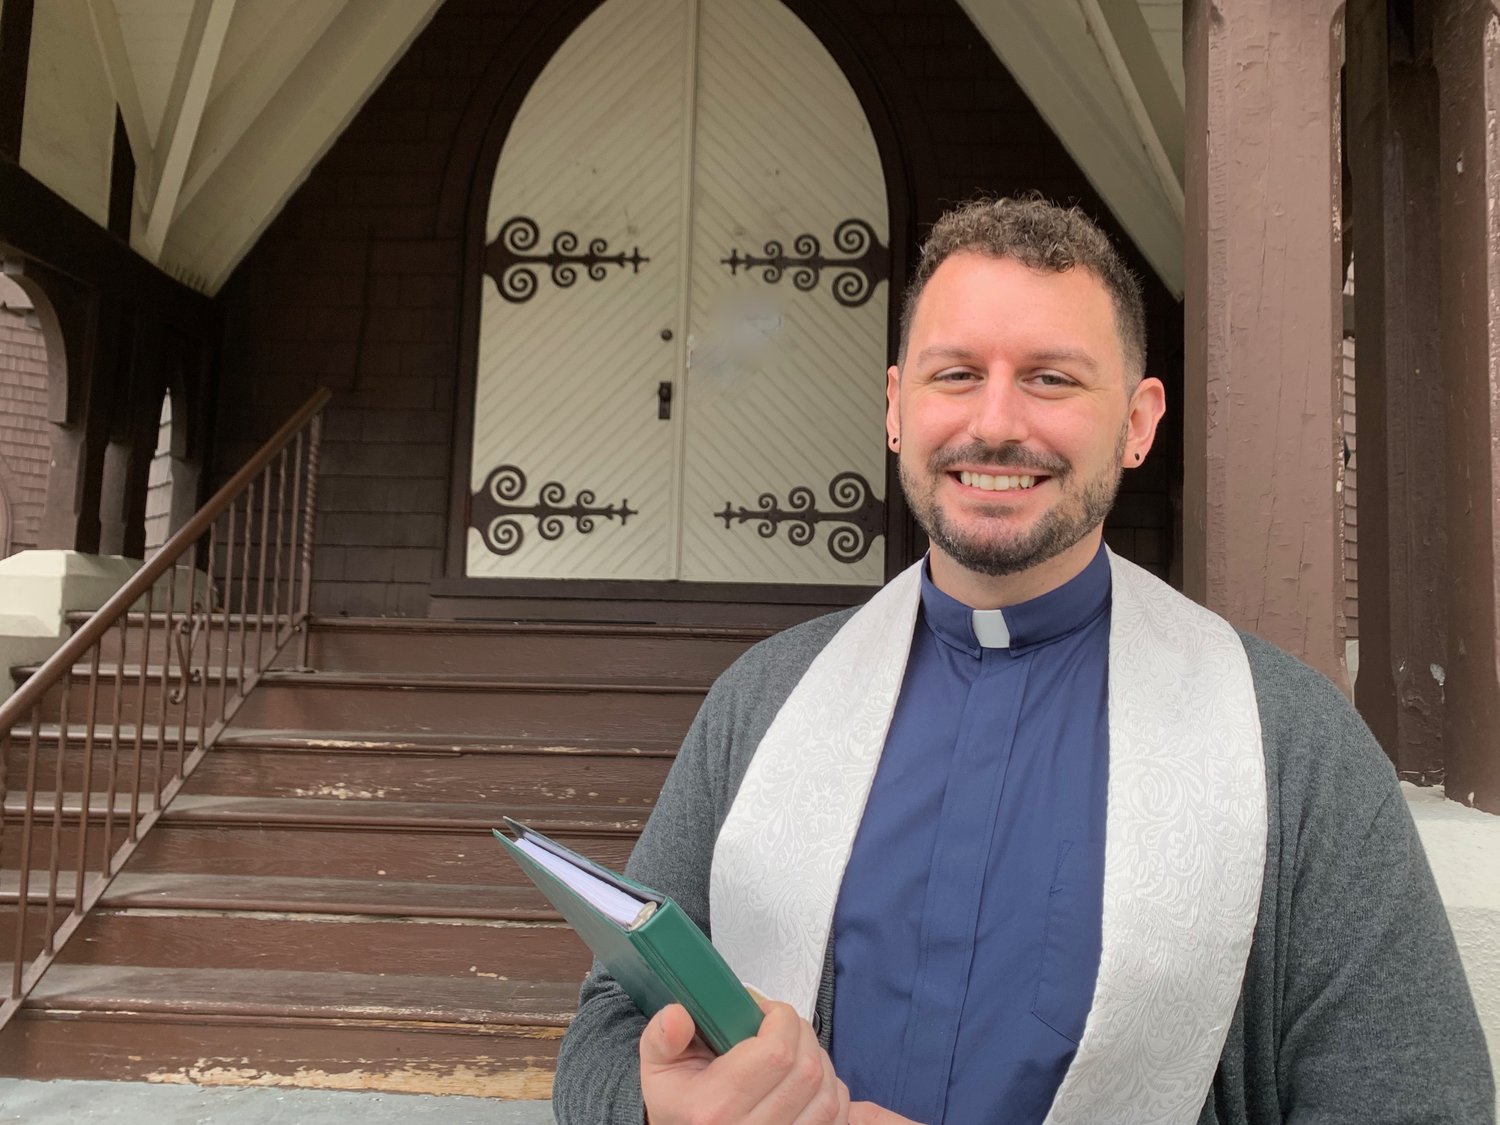 The Rev. Lance Hurst, 30, became pastor of First Presbyterian Church of Glen Cove on Nov. 1.